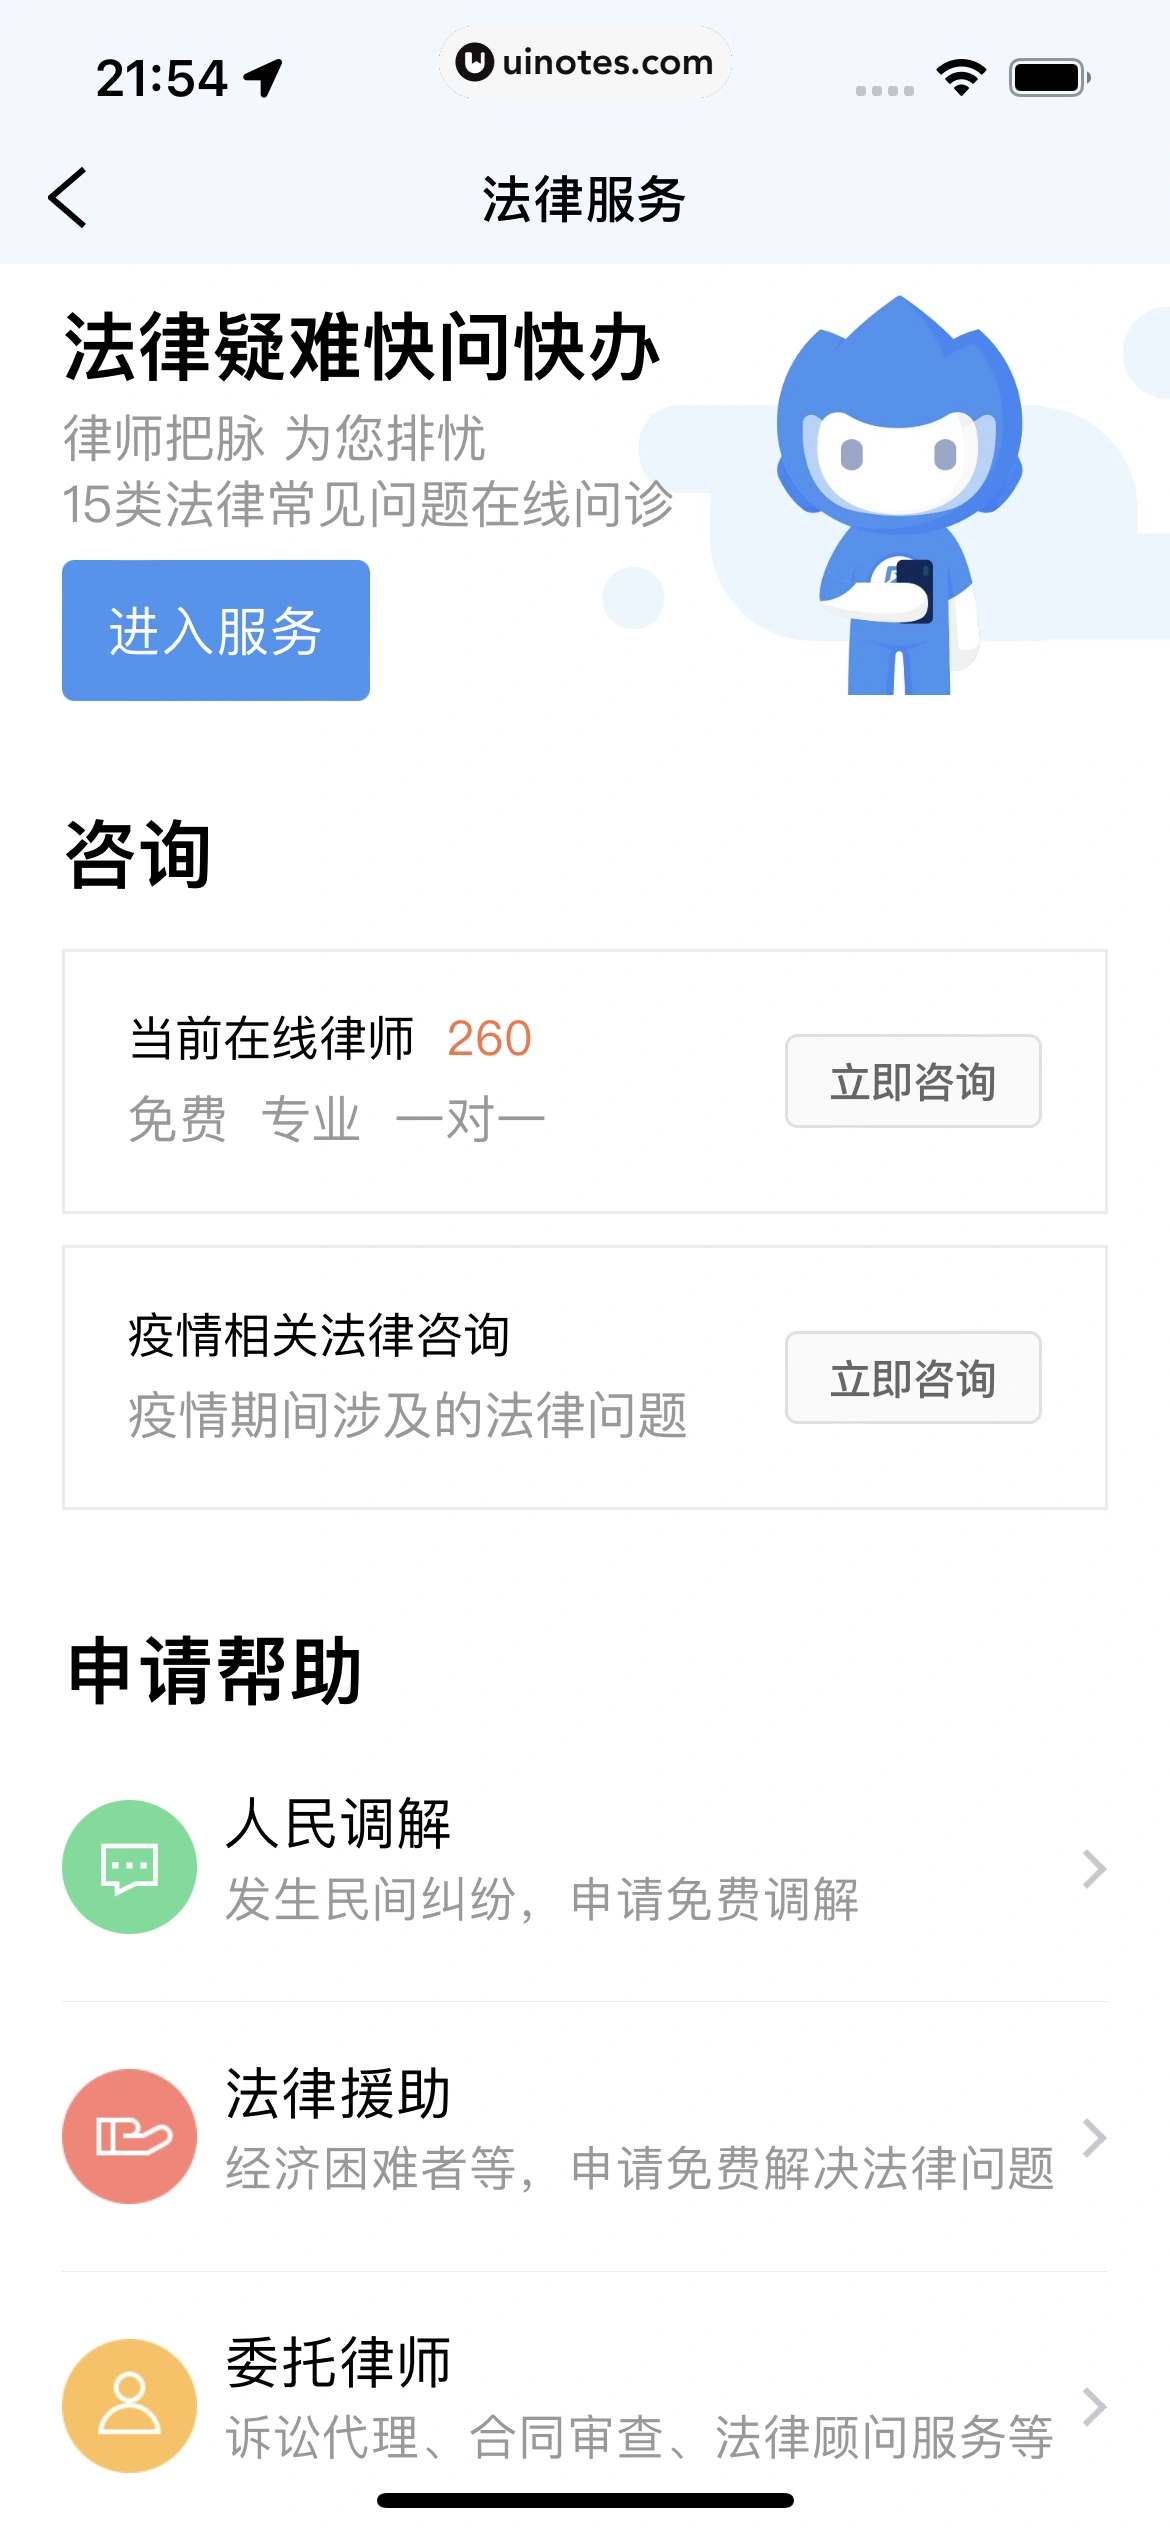 粤省事 App 截图 096 - UI Notes